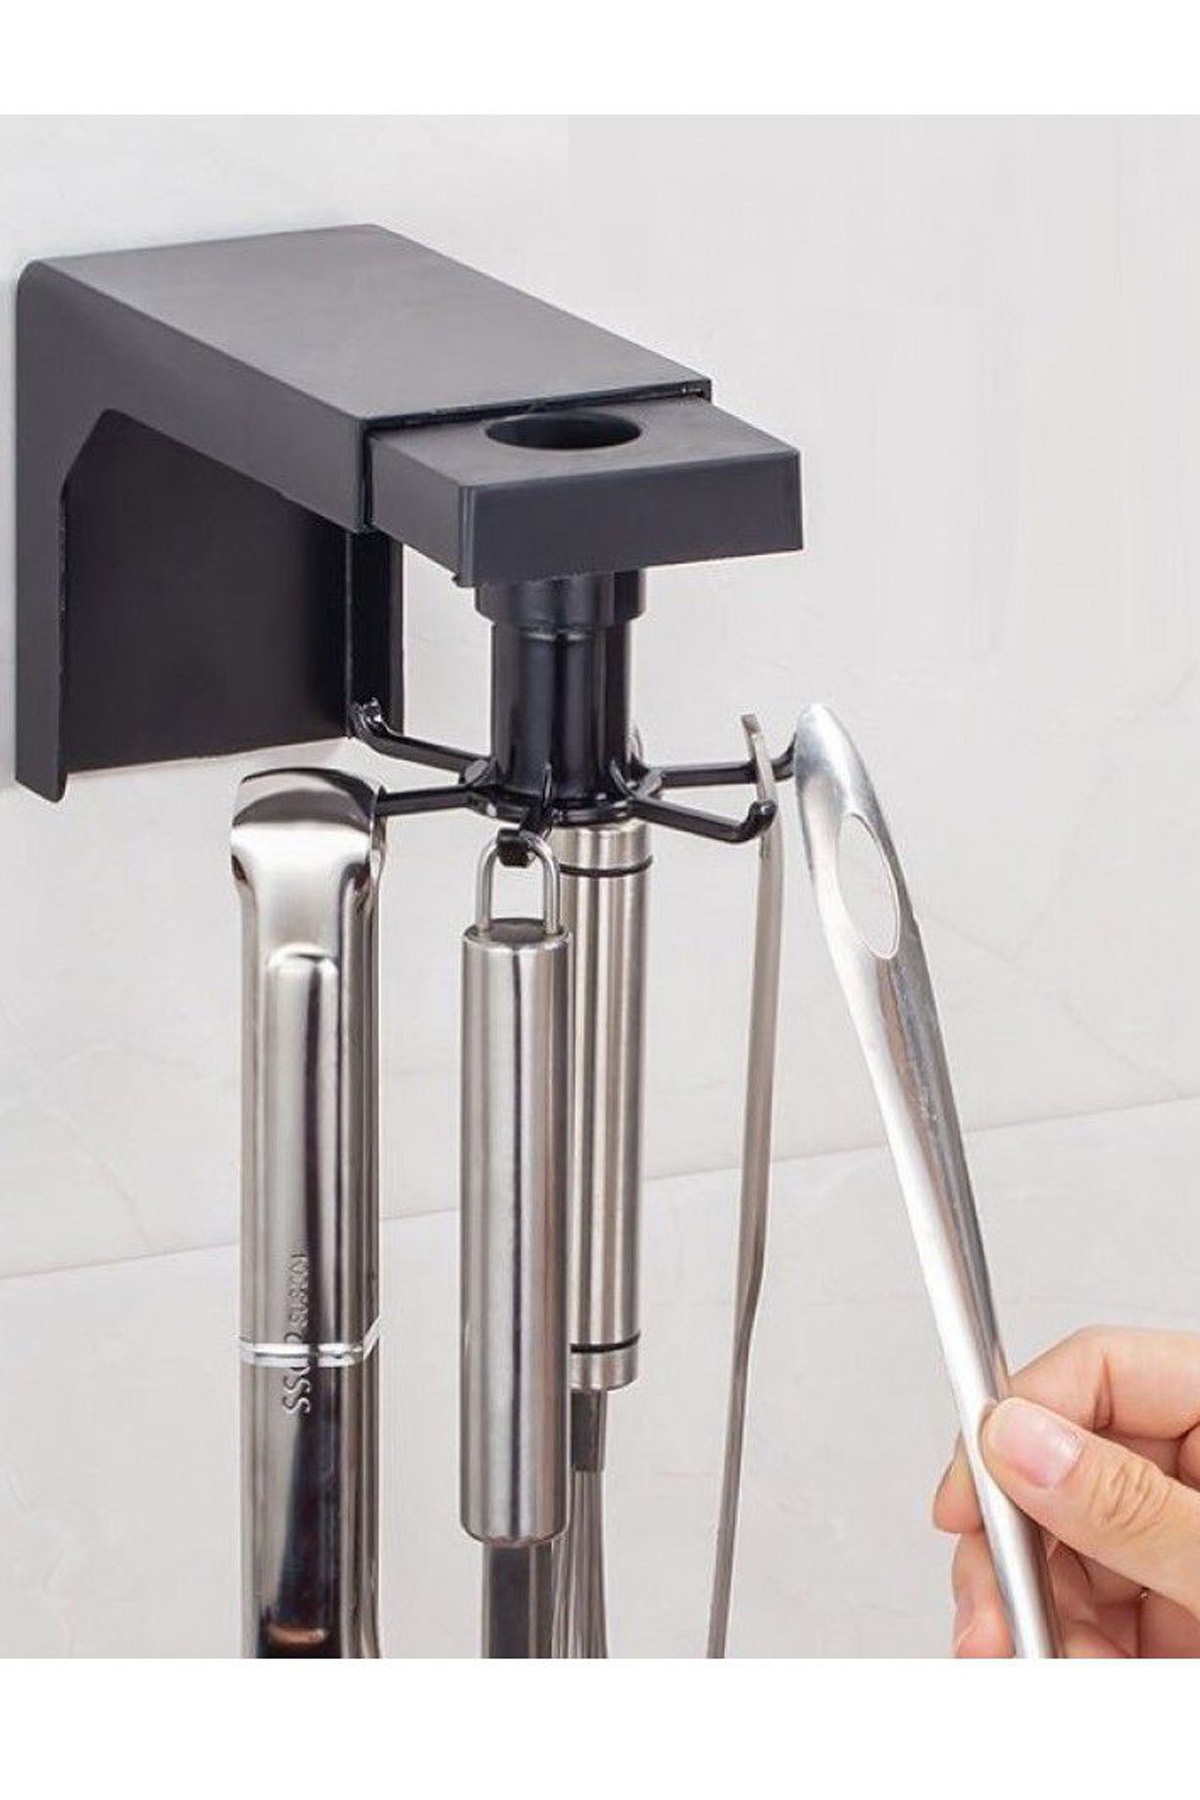 Mutfak Banyo Askısı Kancalı 360 Hareketli Pratik Havlu Araç Gereç